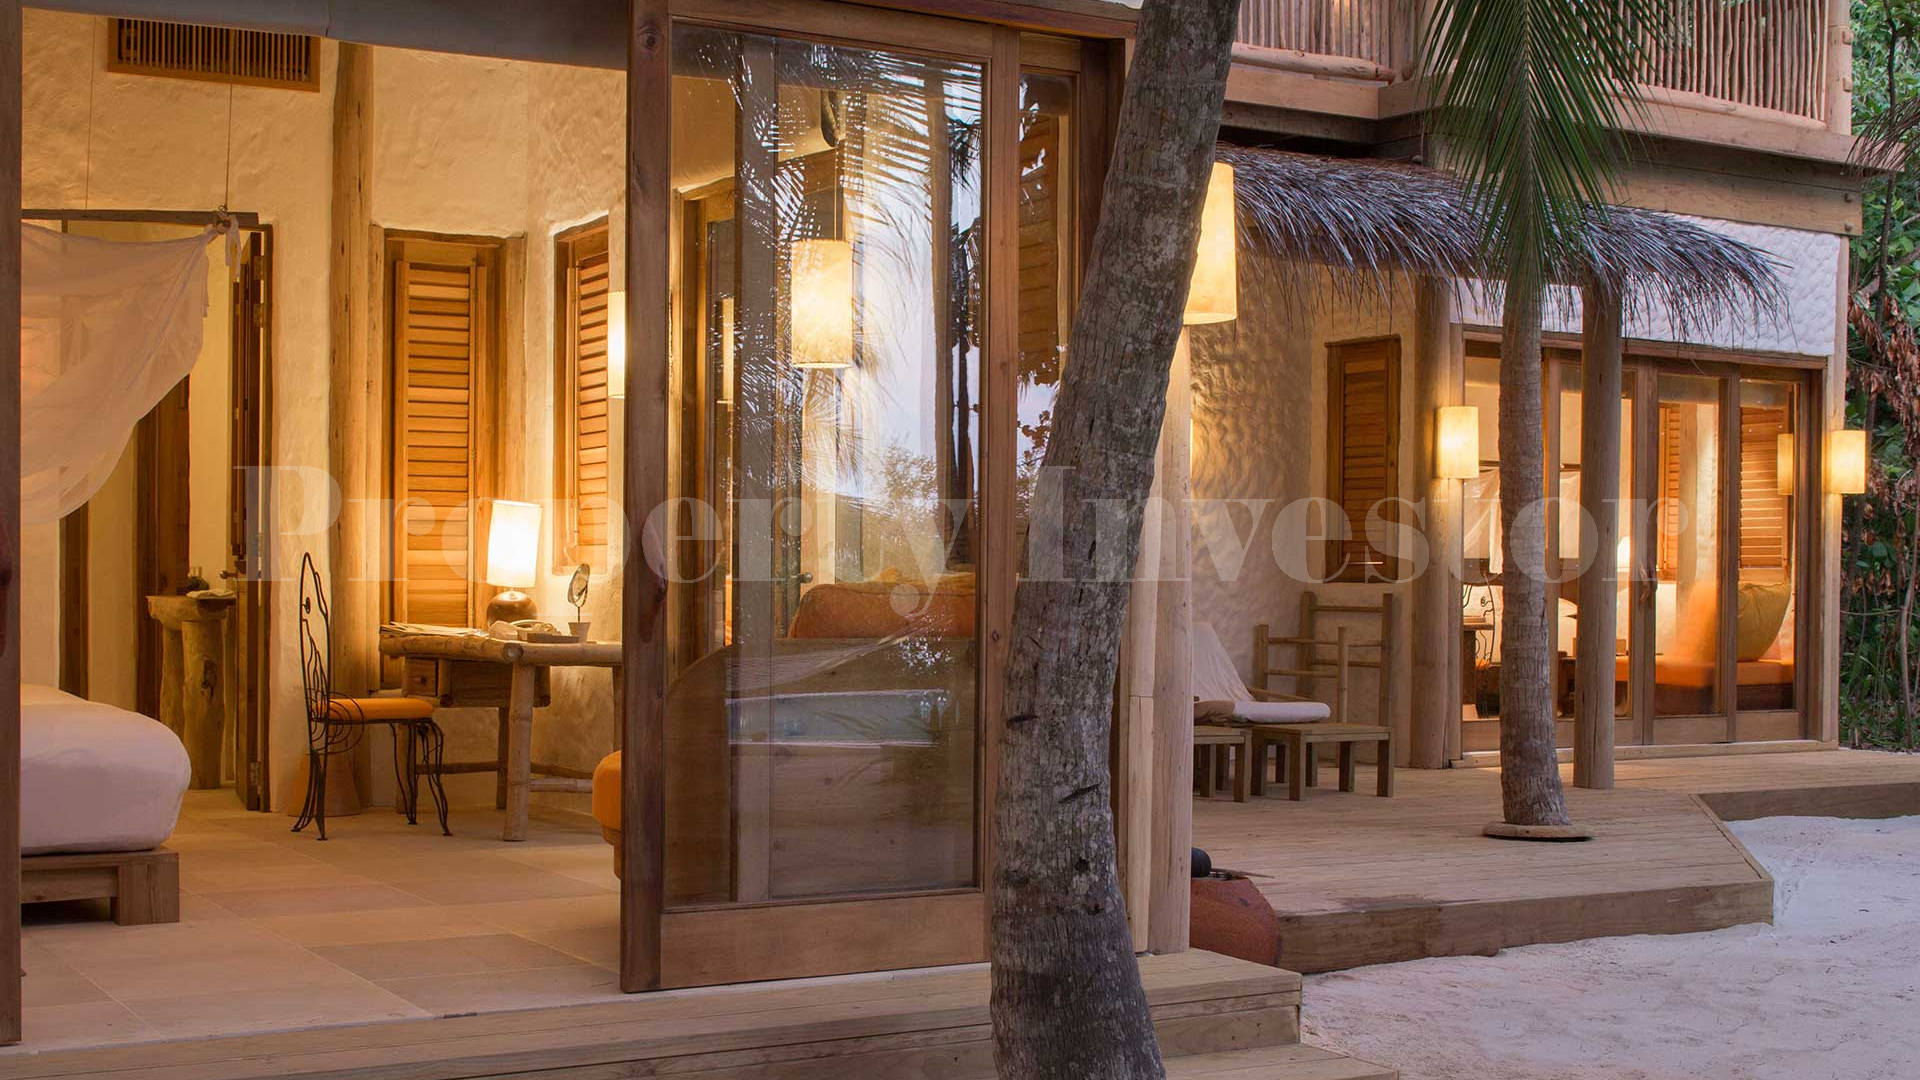 Продаётся укромная, роскошная пляжная вилла с 4 спальнями и бассейном при эко-отеле на Мальдивах